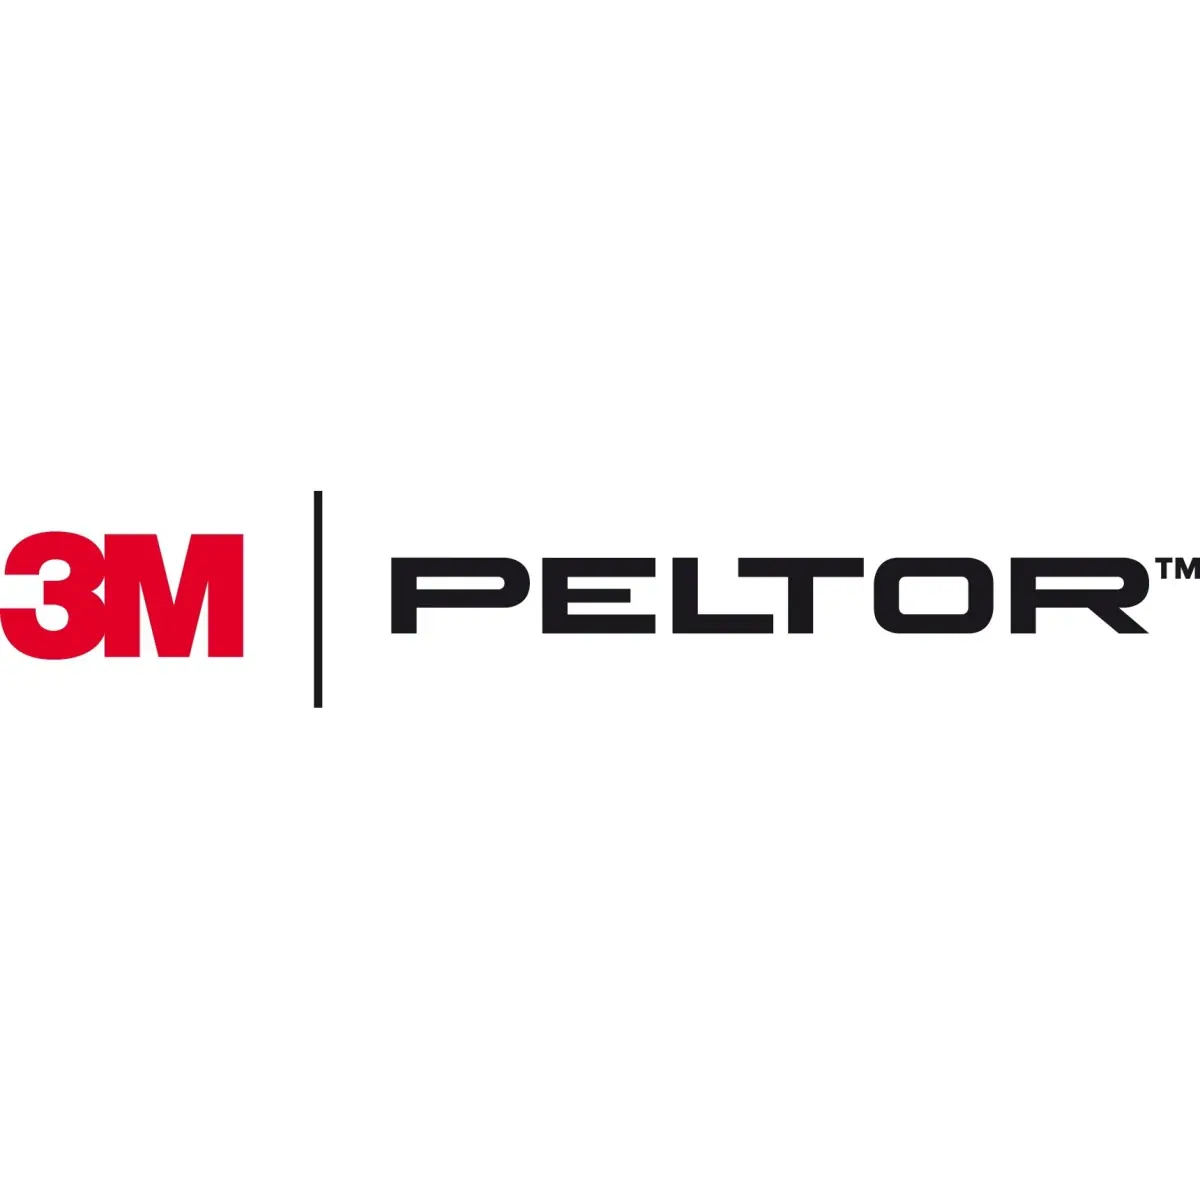 3M Peltor - Leader mondial de la protection auditive - meilleur casque anti bruit